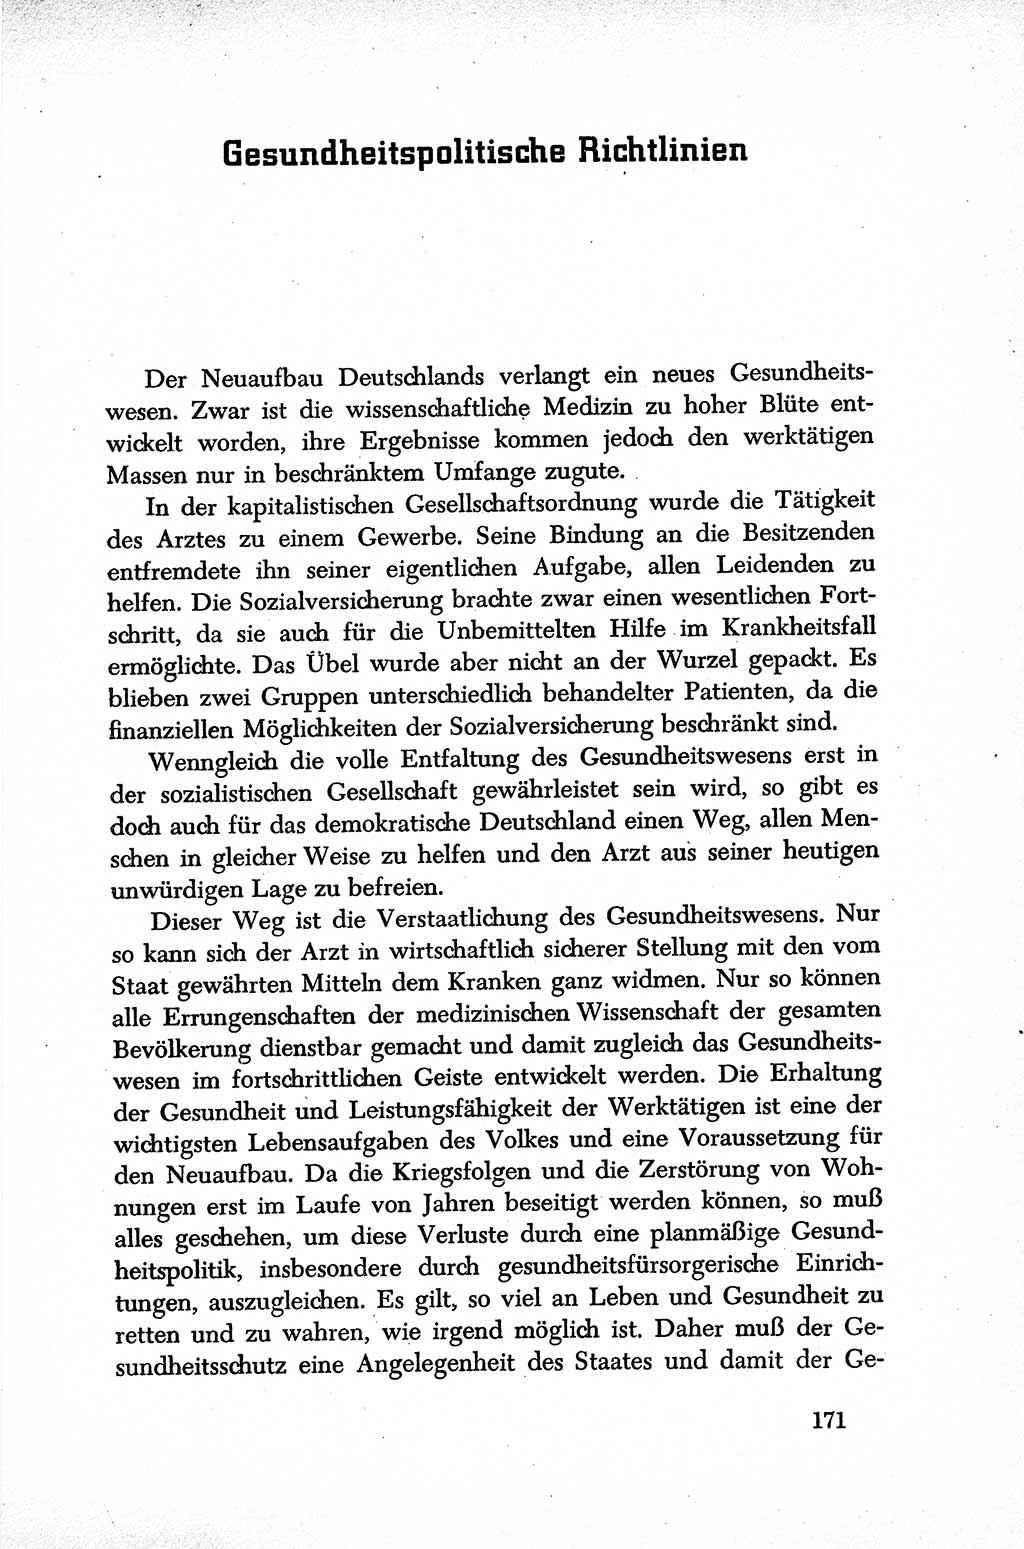 Dokumente der Sozialistischen Einheitspartei Deutschlands (SED) [Sowjetische Besatzungszone (SBZ) Deutschlands] 1946-1948, Seite 171 (Dok. SED SBZ Dtl. 1946-1948, S. 171)